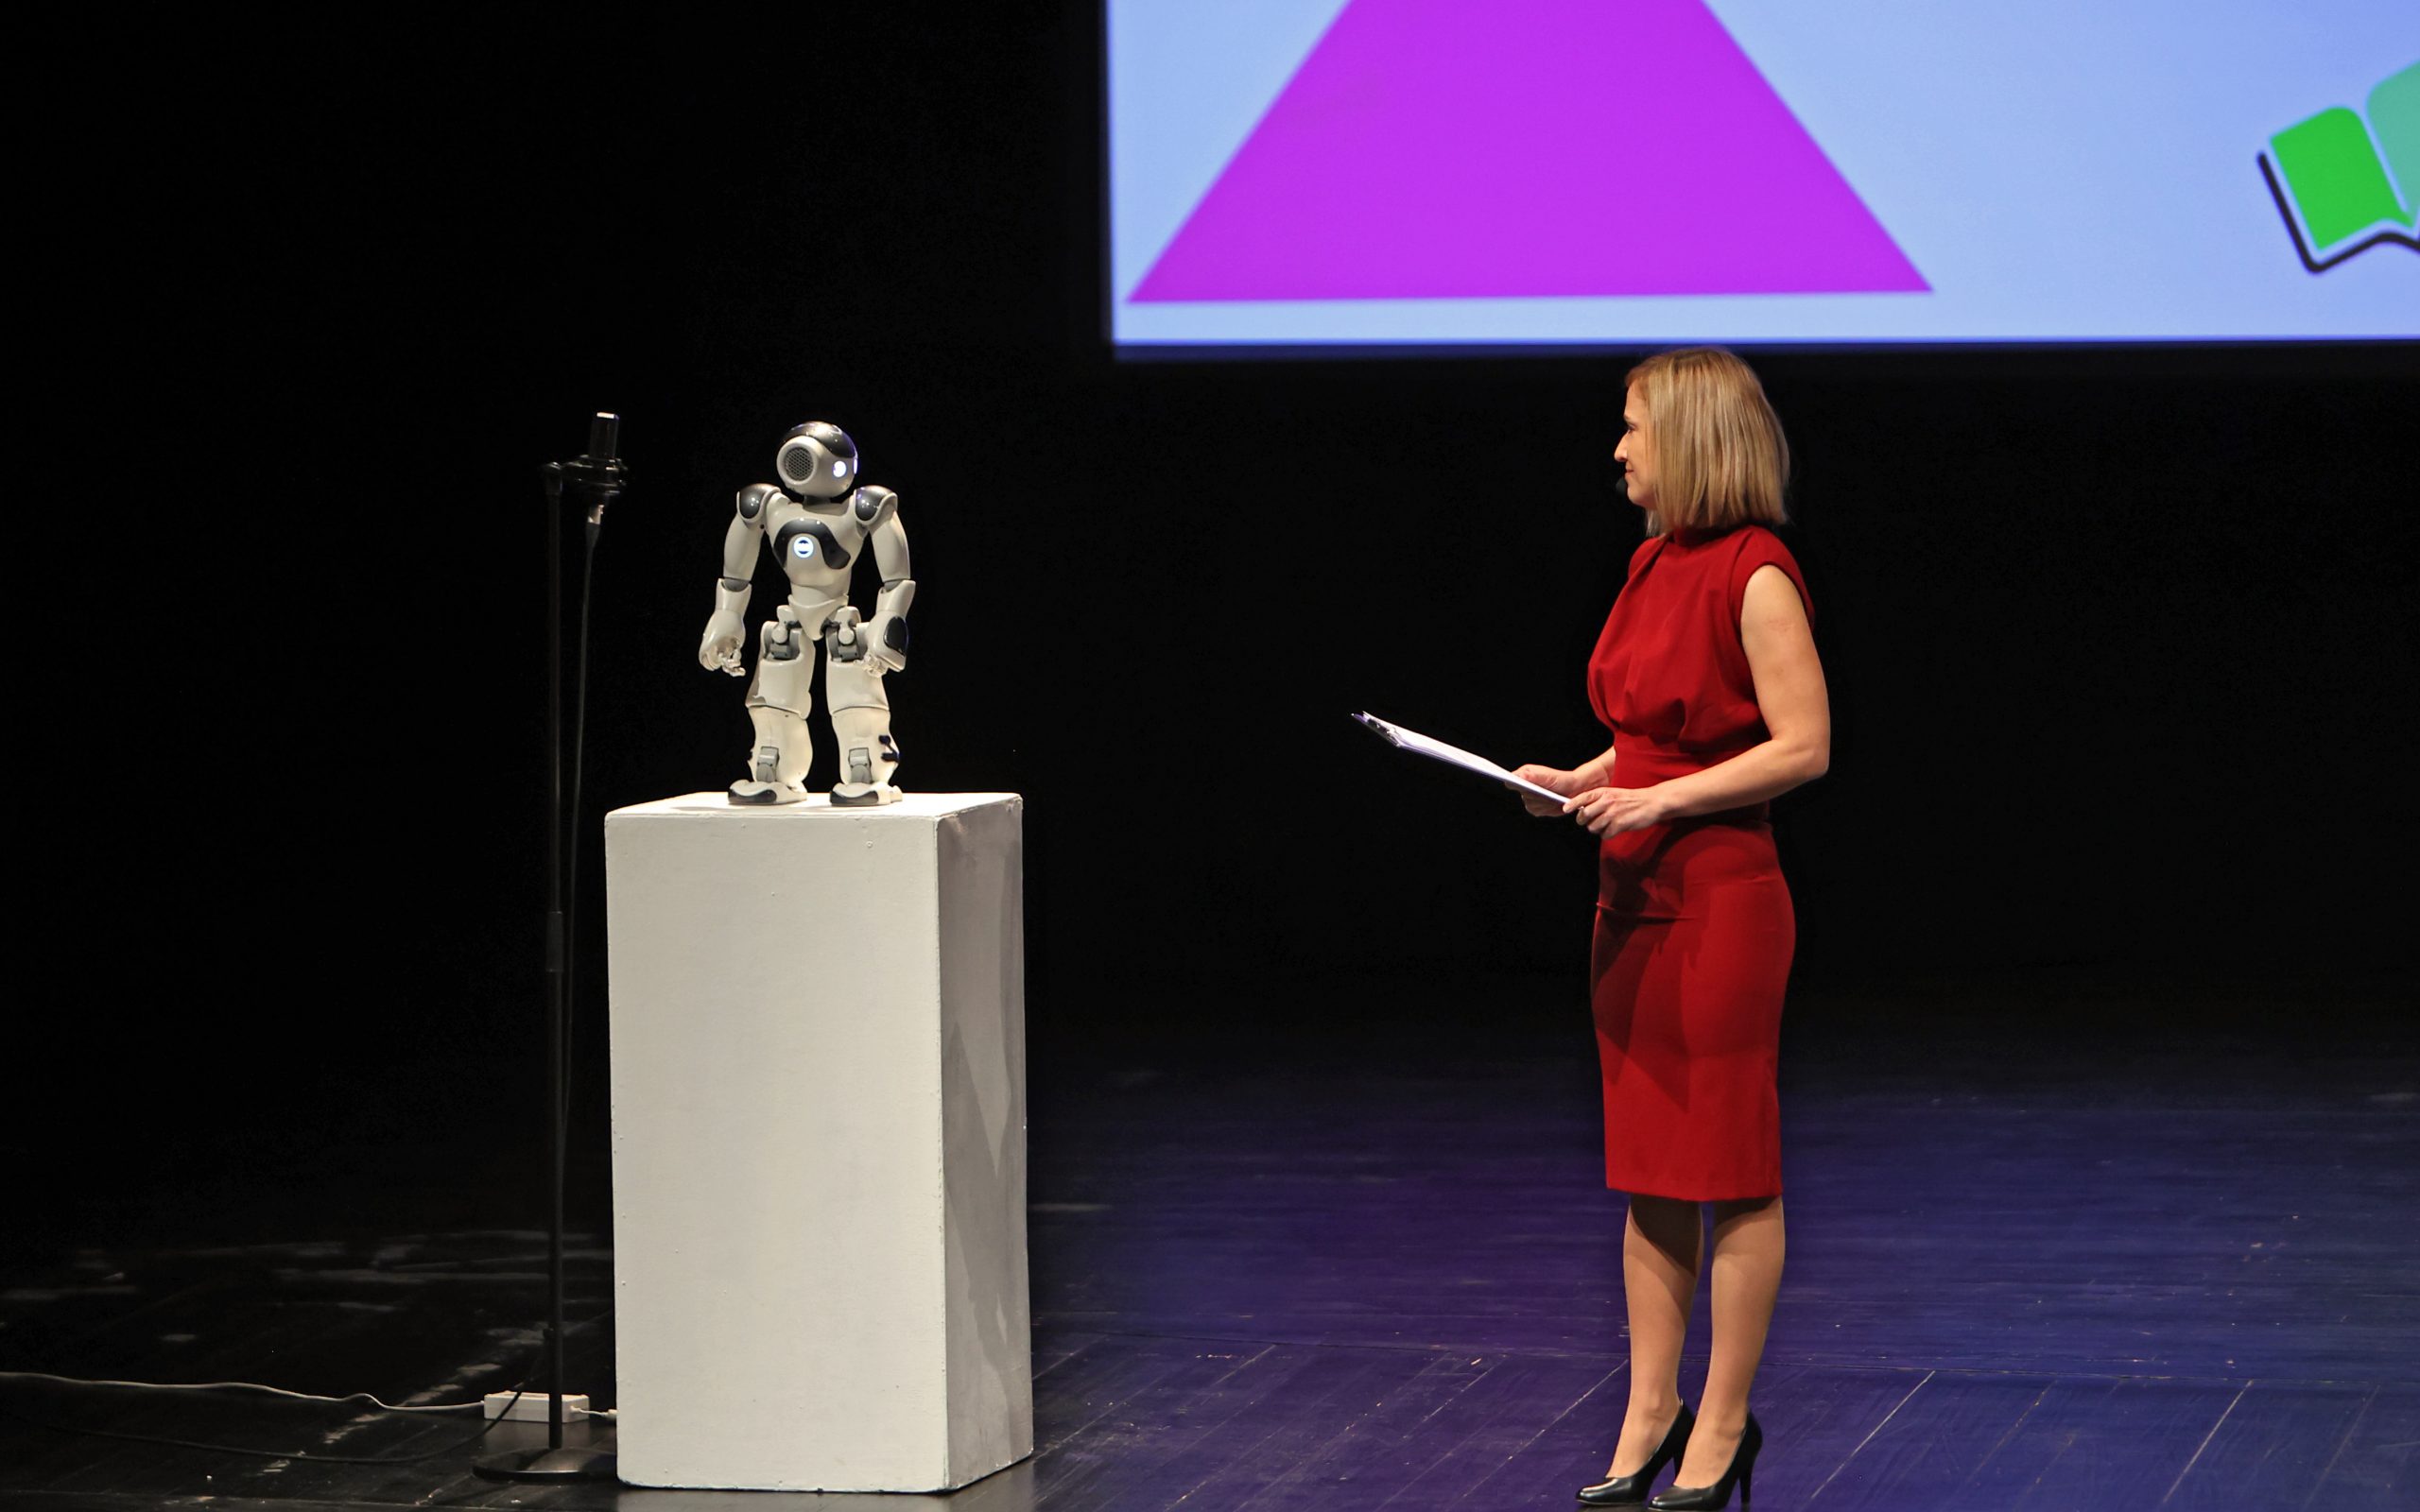 Na odru se pogovarjata ženska in robot.